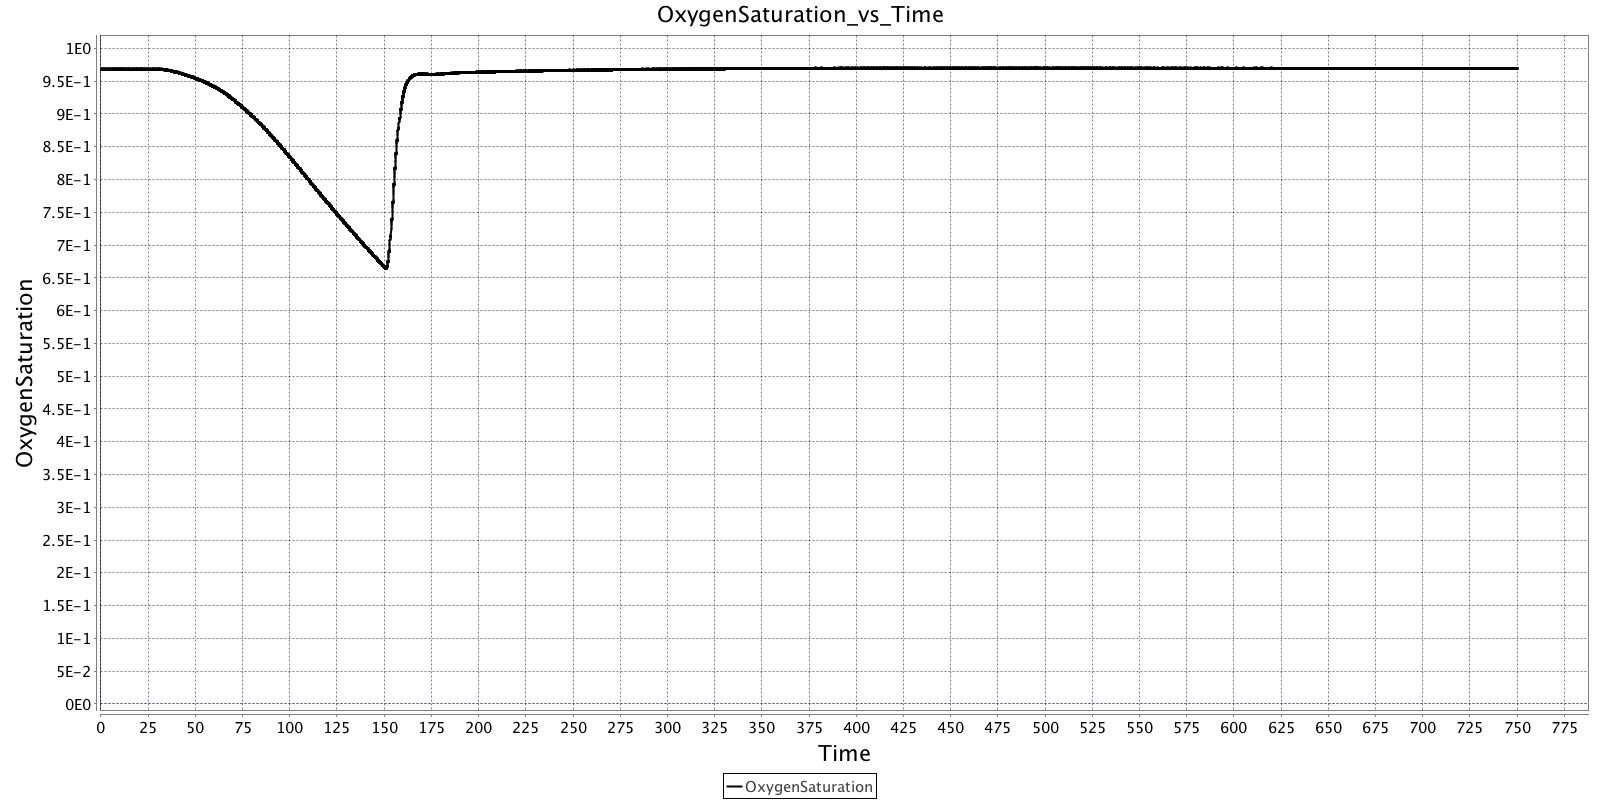 OxygenSaturation_vs_Time.jpg